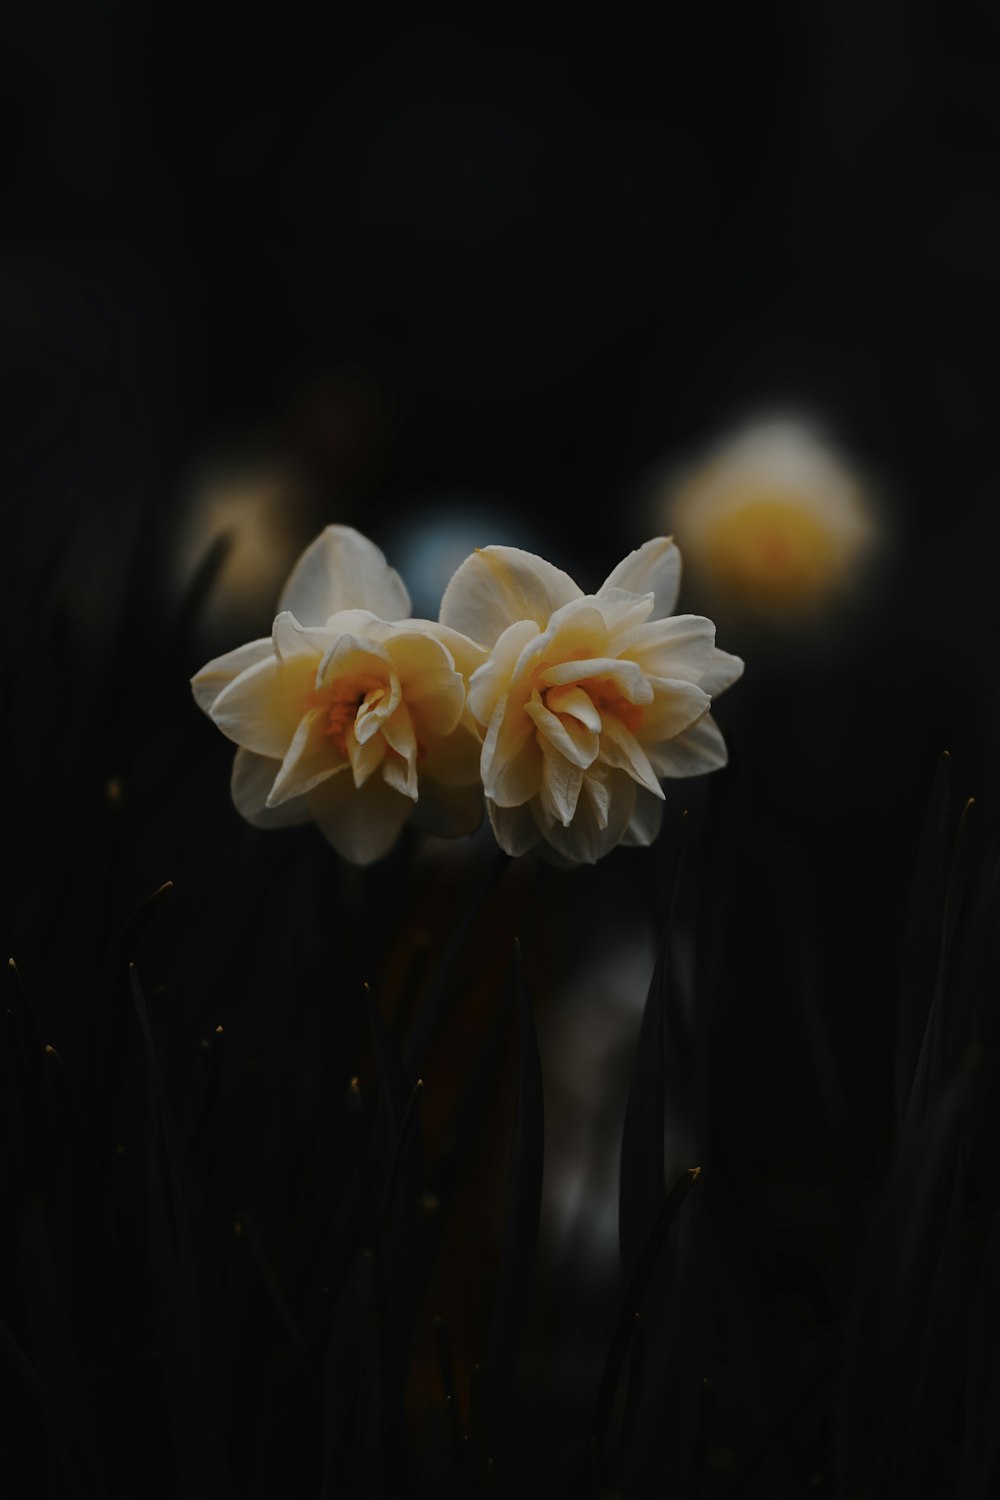 틸트 시프트 렌즈의 흰색과 주황색 꽃